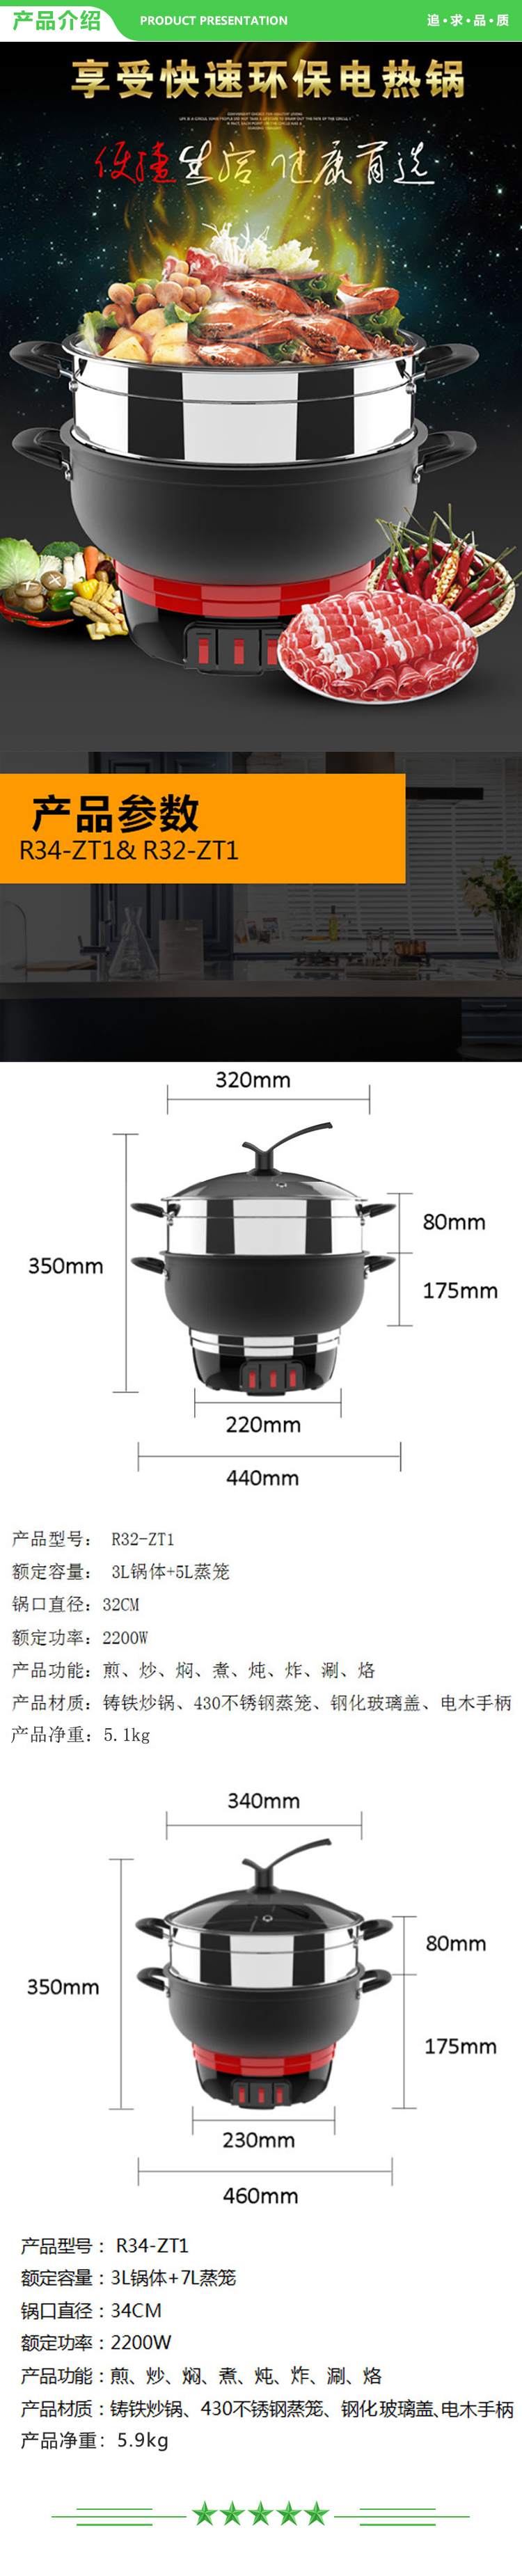 九阳 Joyoung R32-ZT1 R34-ZT1 多用锅家用大容量电蒸锅电热锅 (2).jpg